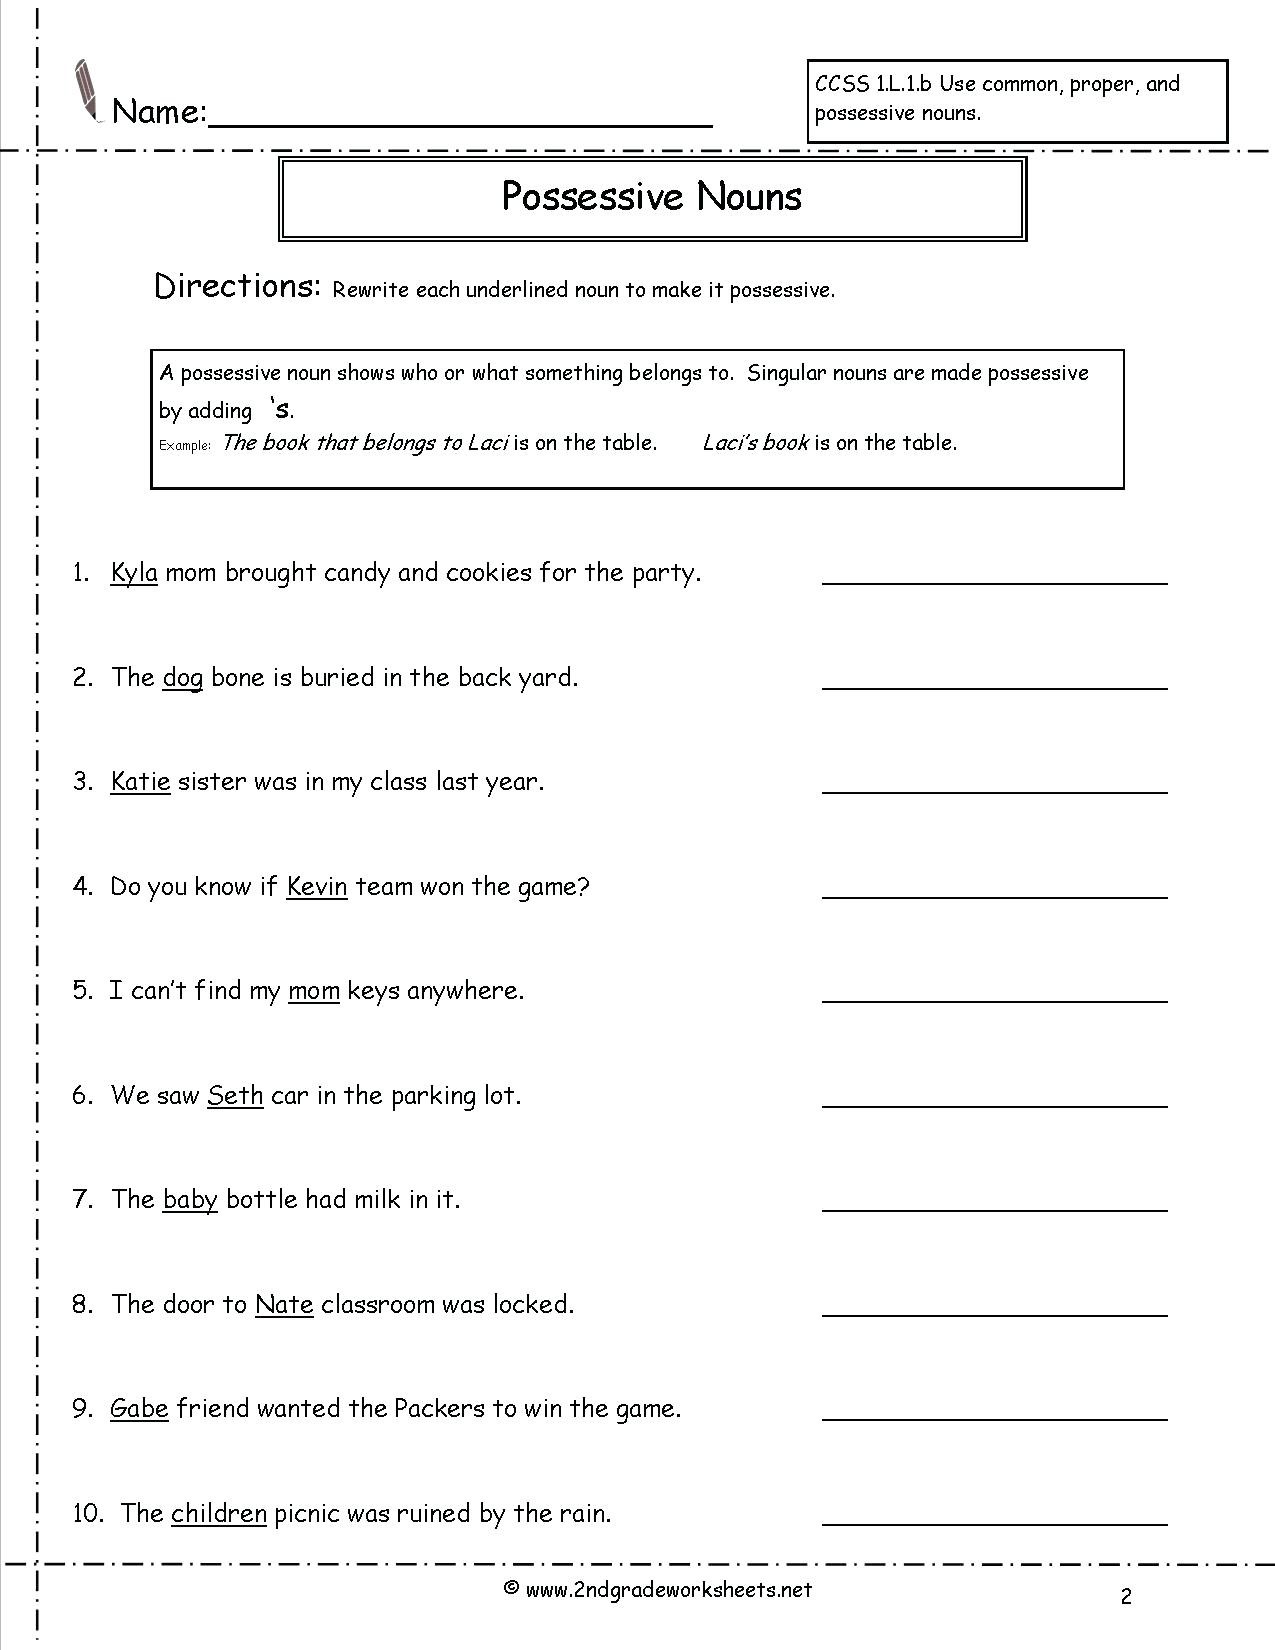 Possessive Pronoun Worksheets 5th Grade Nouns and Pronouns Worksheets Possessive Nouns Worksheet